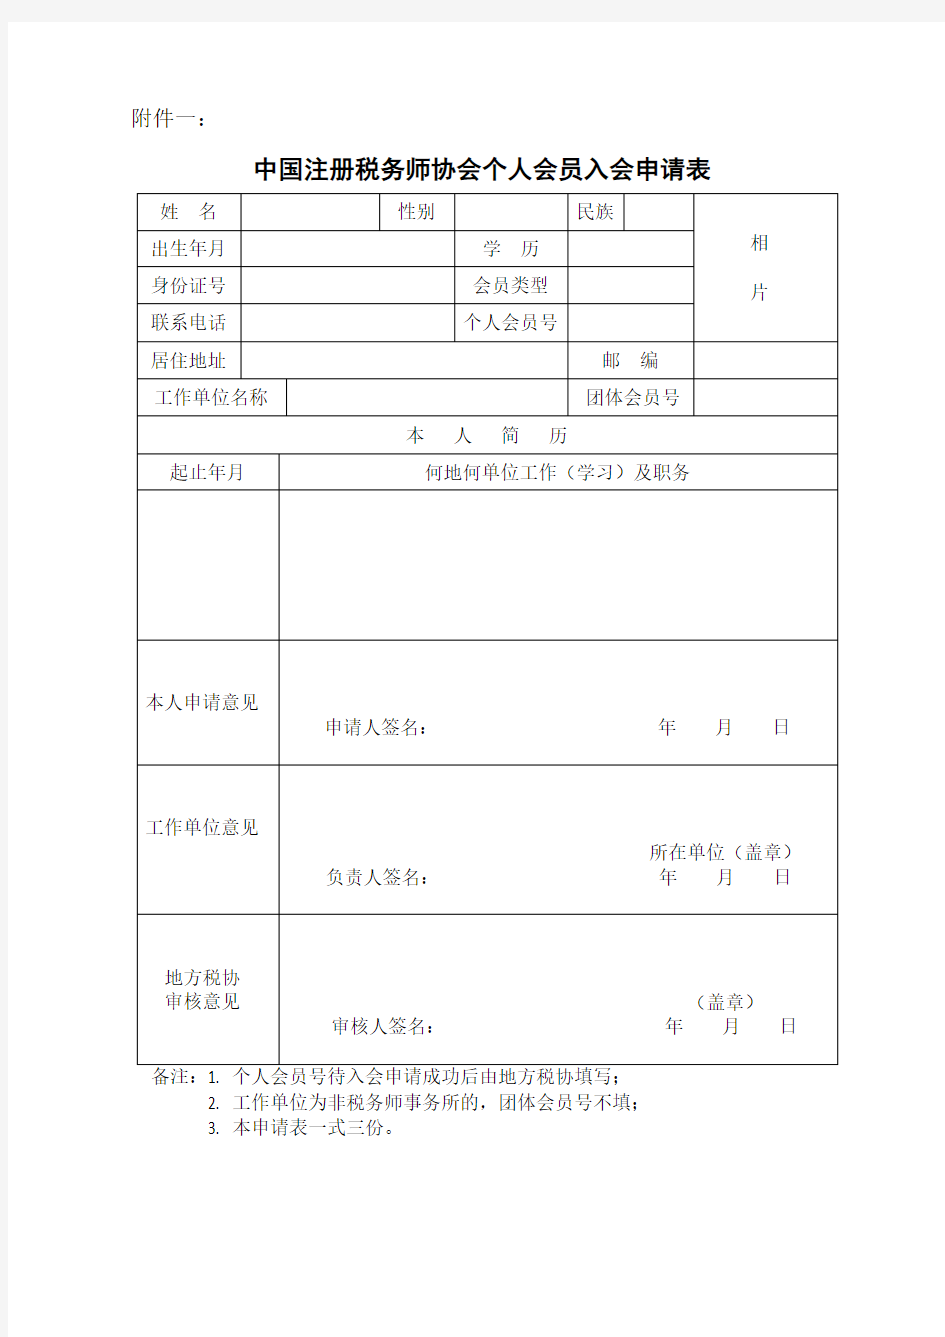 中国注册税务师协会个人会员入会申请表